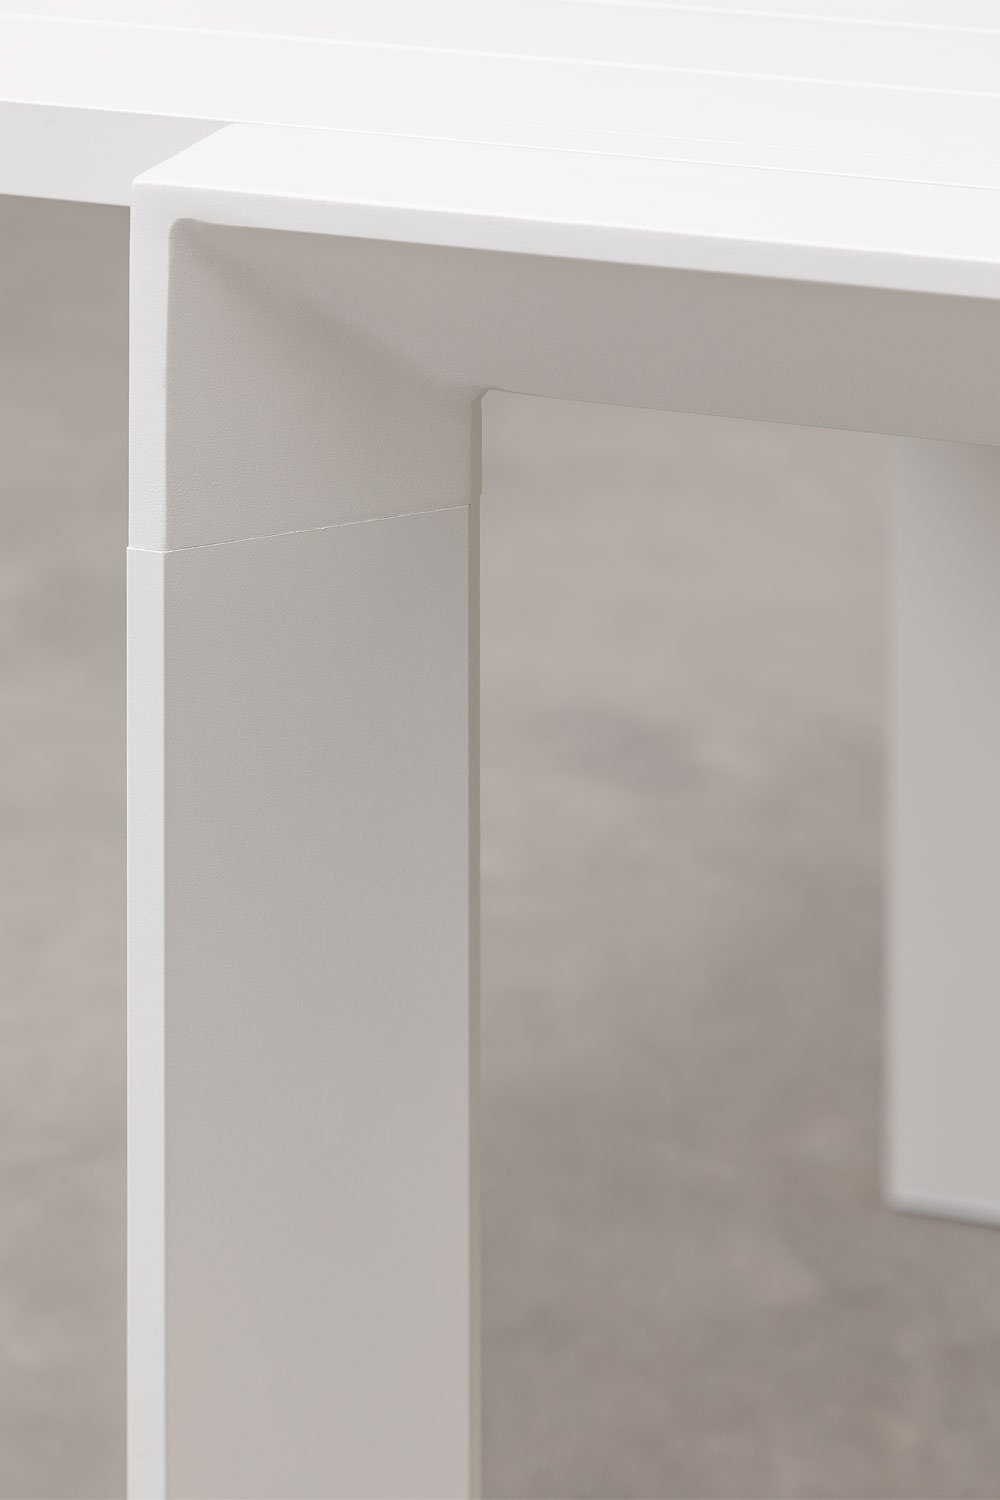 Mesa de Jardín Extensible Rectangular en Aluminio (180-240x100 cm) Starmi Blanco Gardenia -  SKLUM